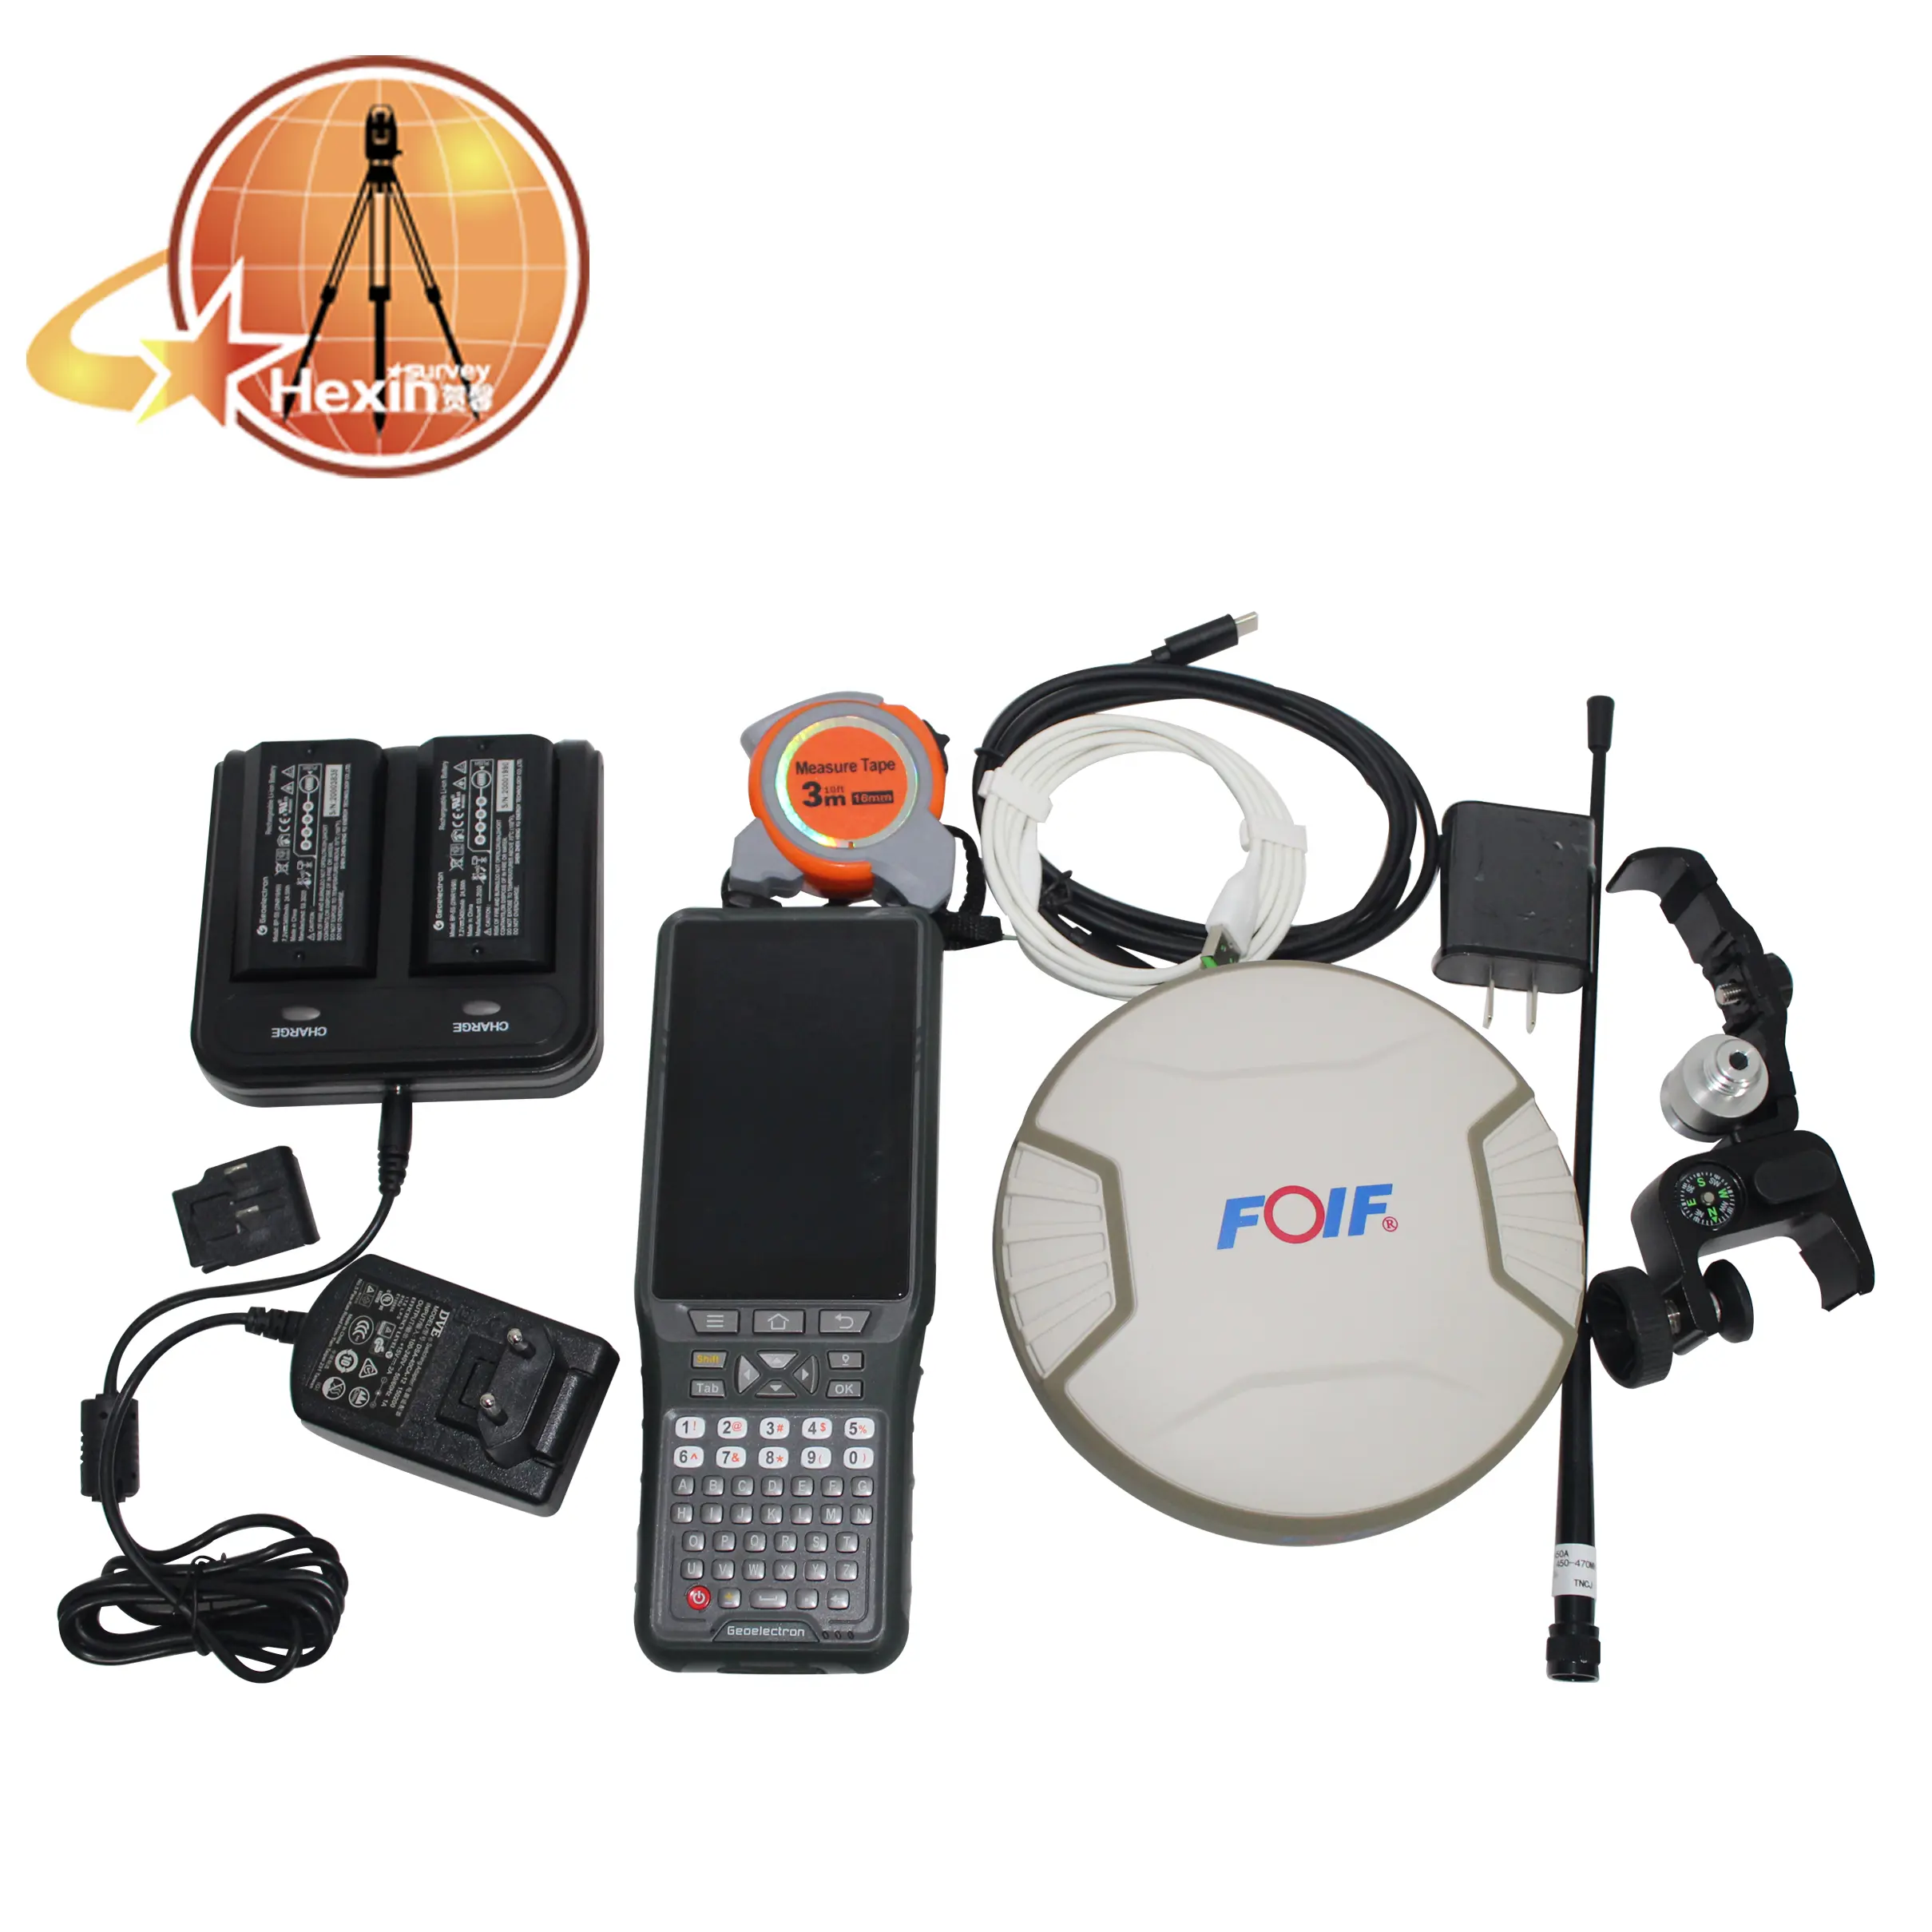 Haute qualité FOIF A90 Android 5.1 P9III contrôleur portable GPS GNSS RTK récepteur avec 410-470MHz